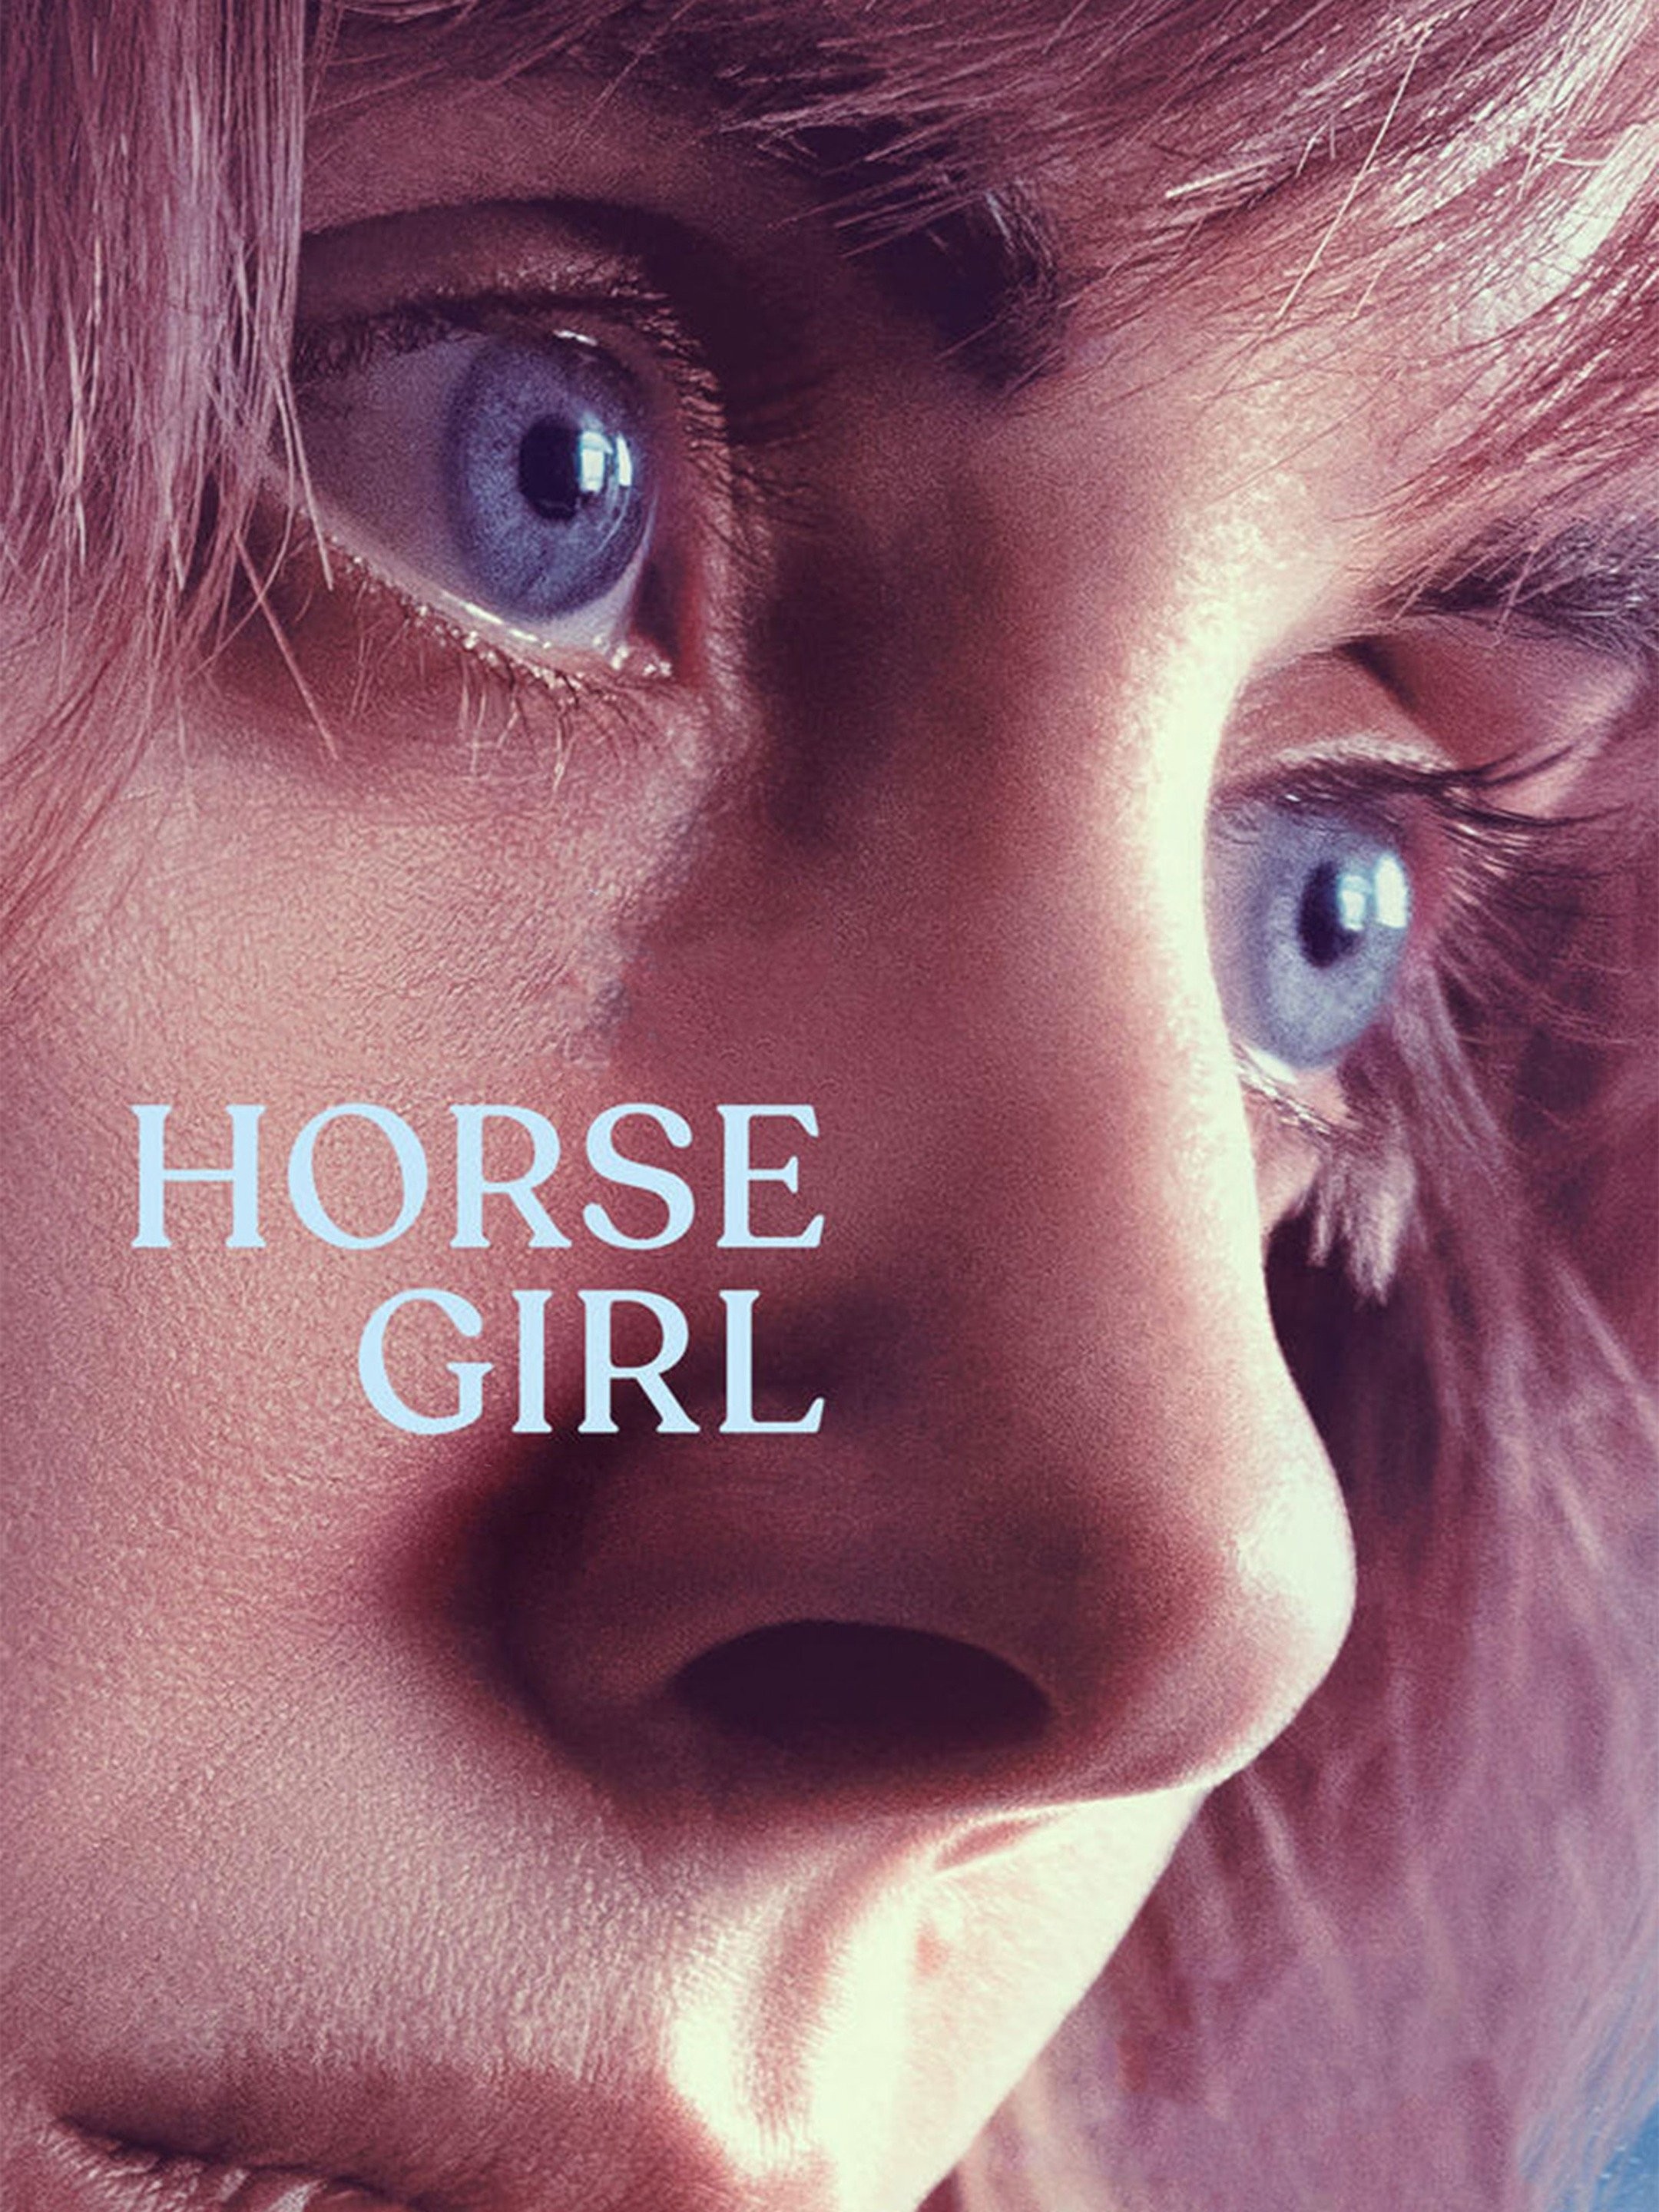 Hgoda Aur Girlxxxvideo - Horse Girl - Rotten Tomatoes